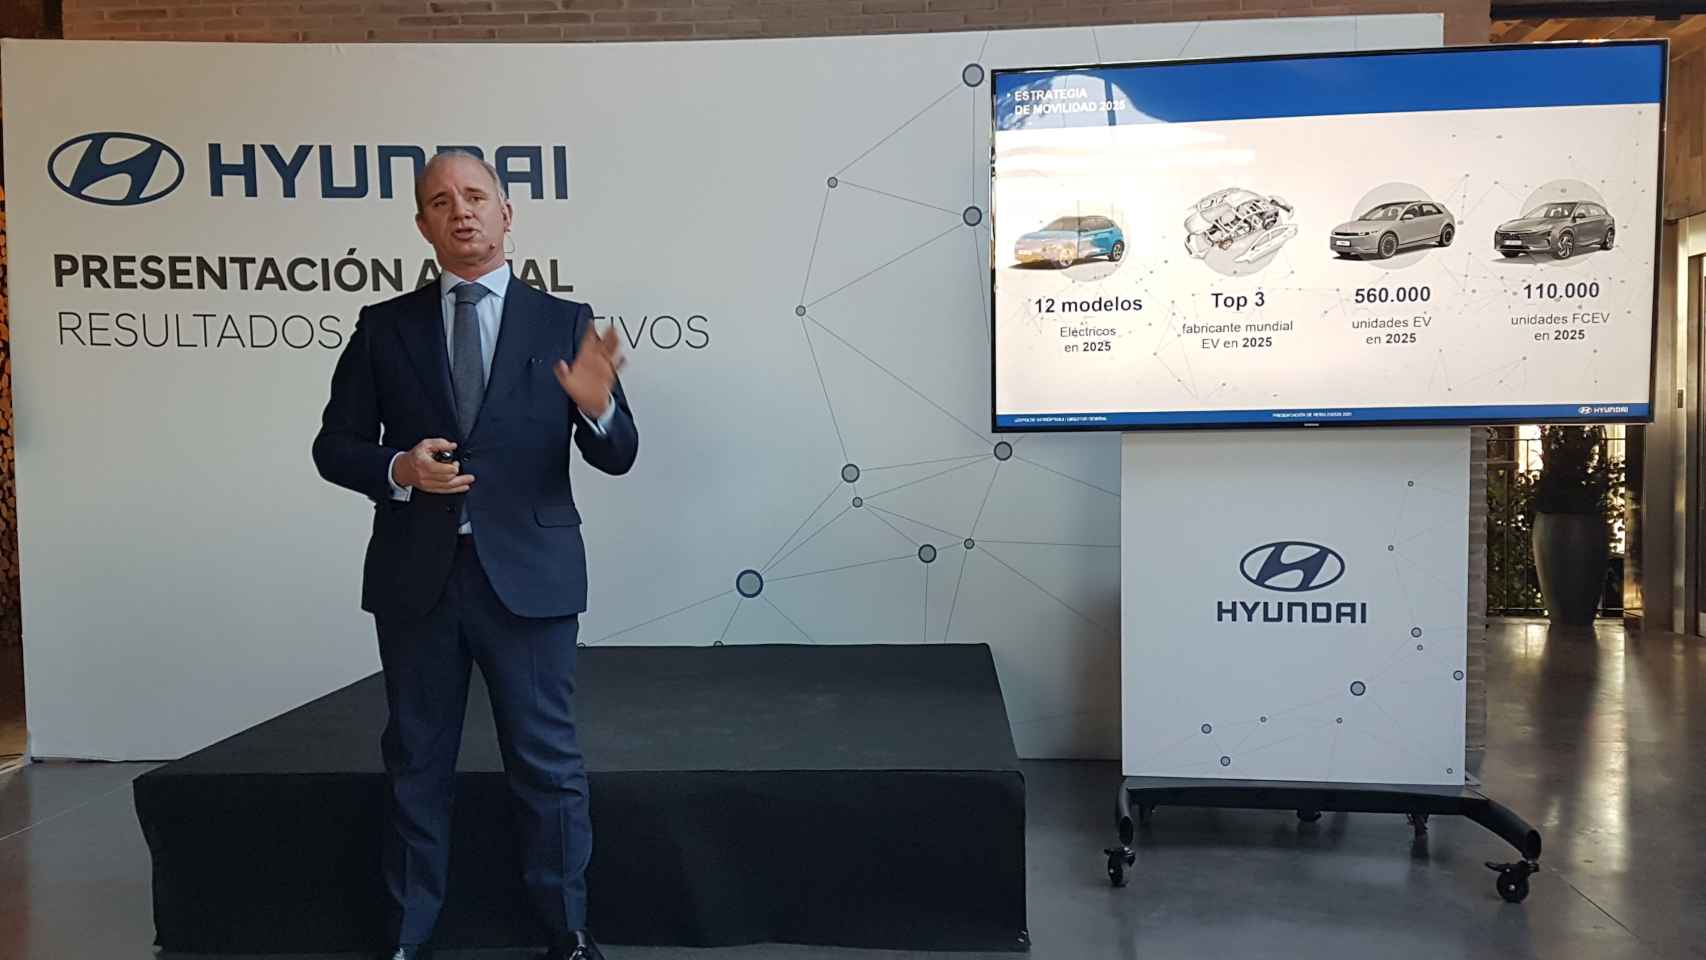 Leopoldo Satrústegui, director general de Hyundai en España, durante su presentación.